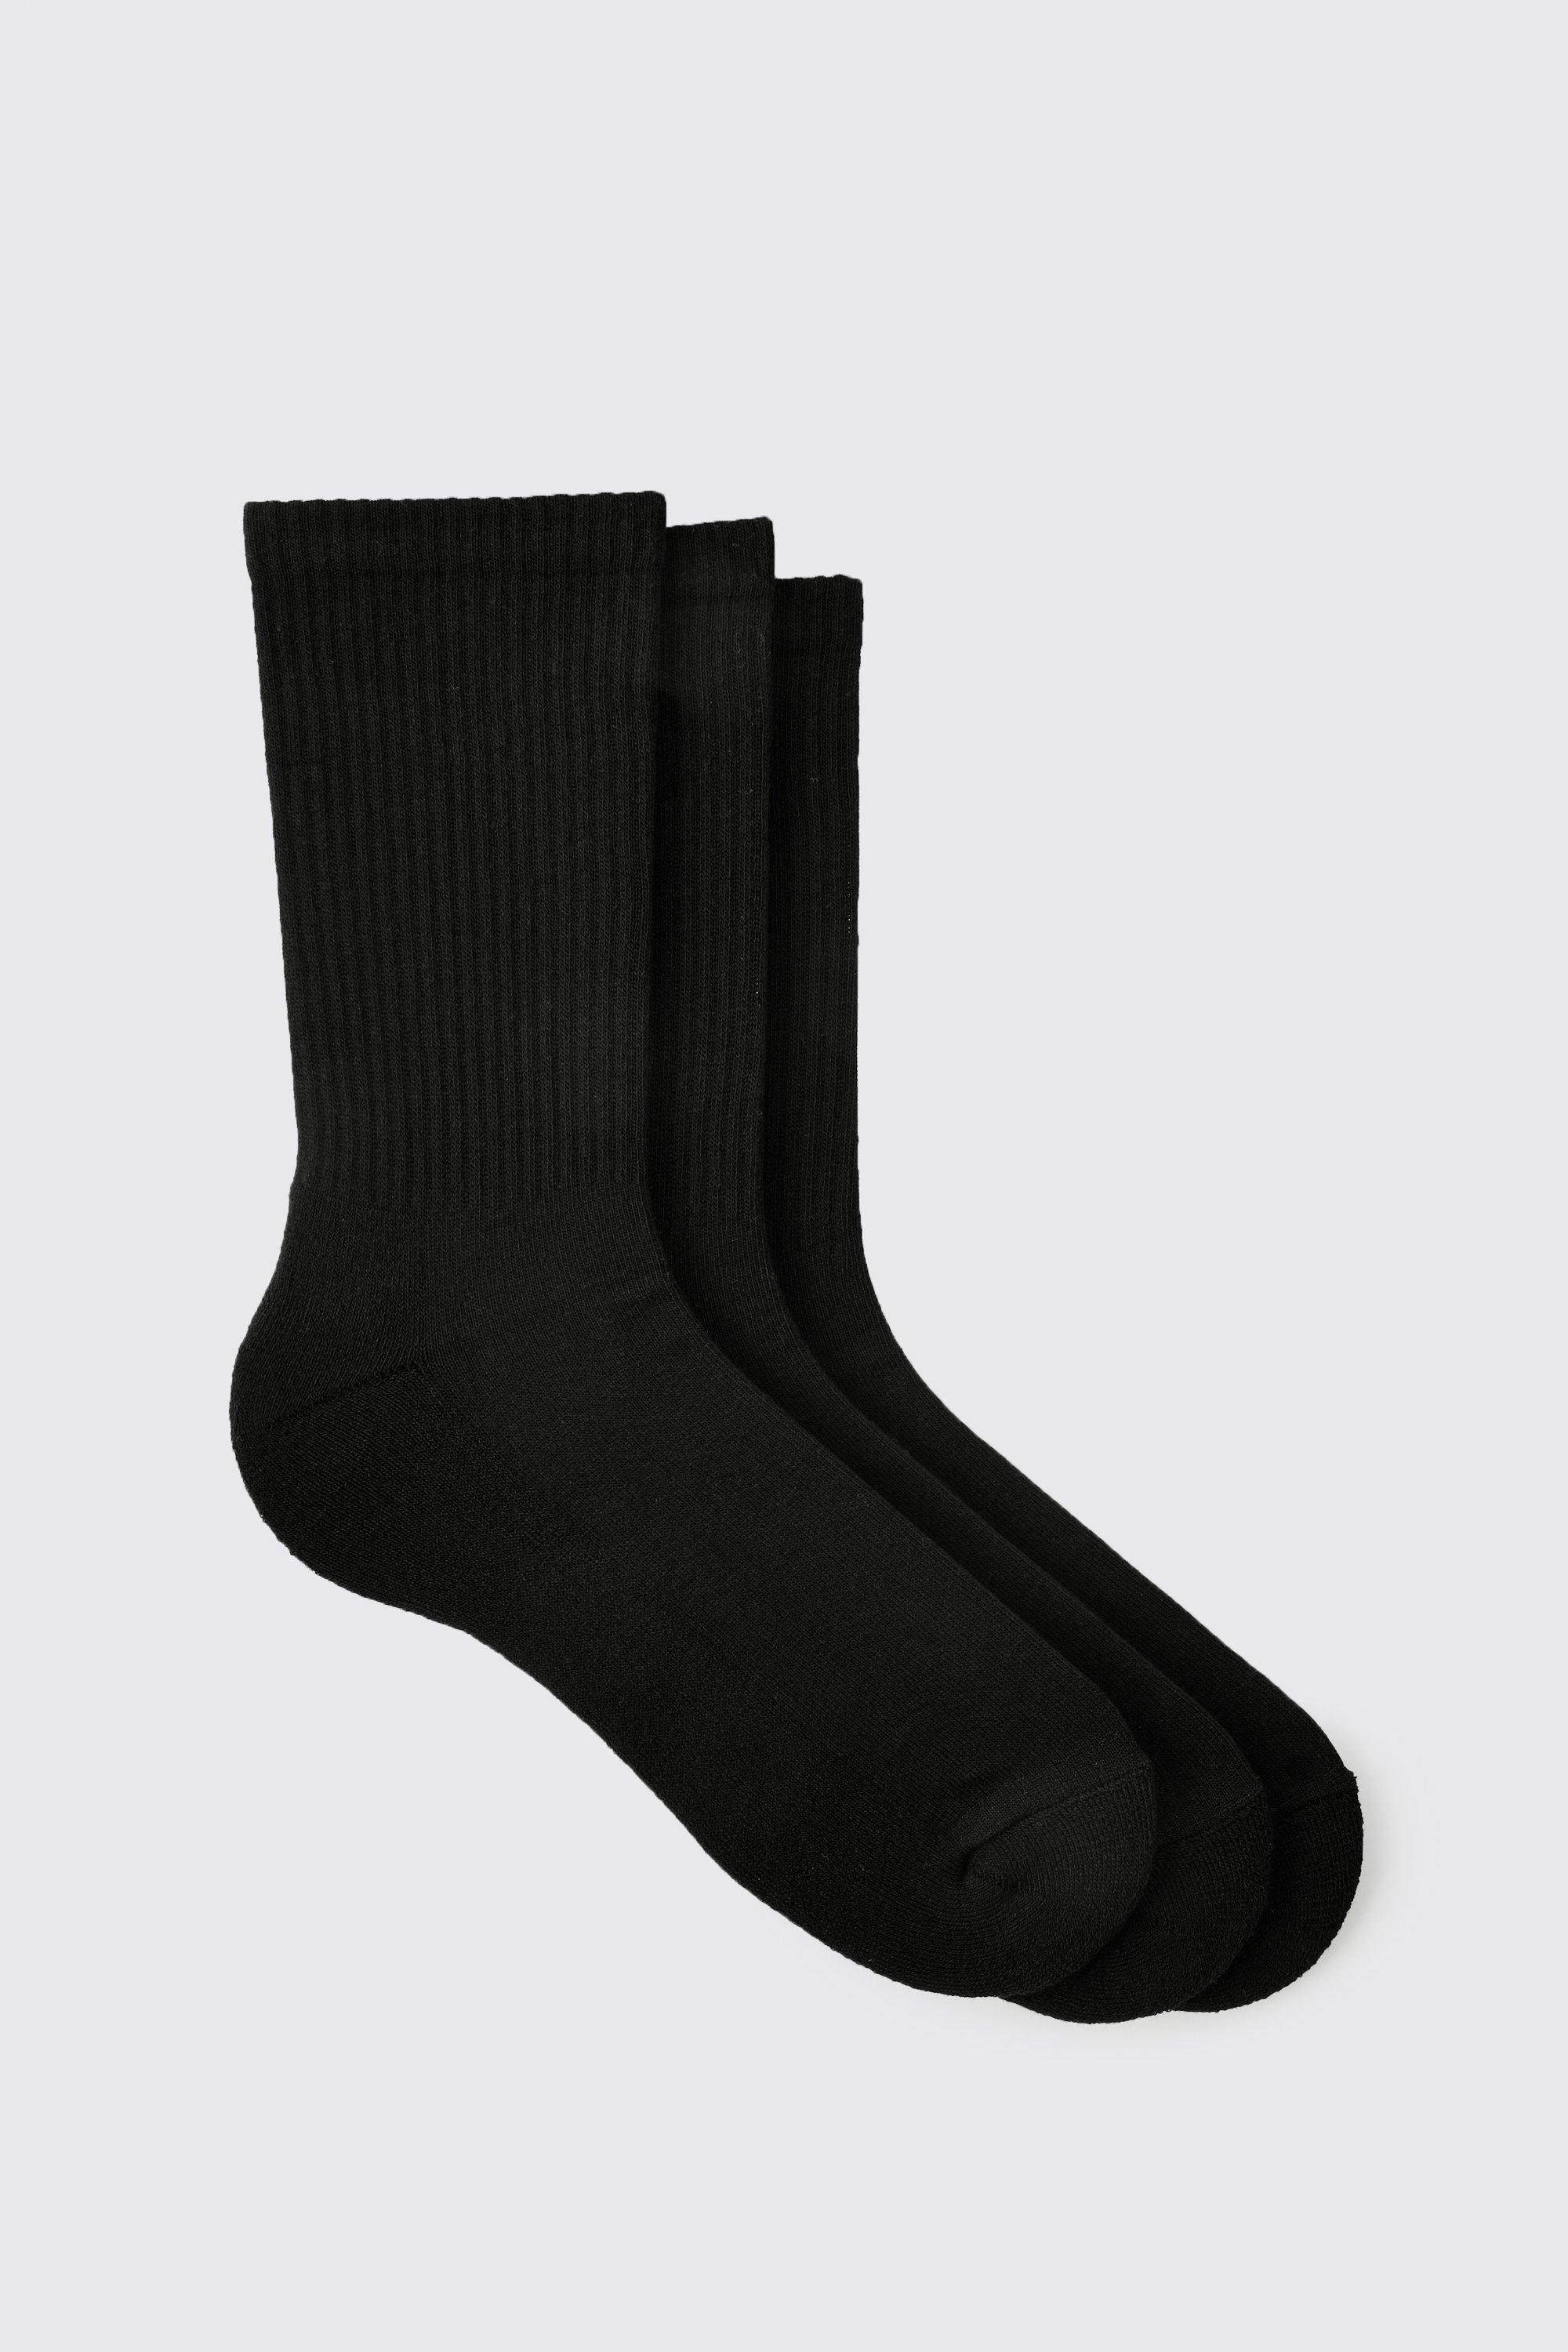 men's 3 pack plain sport socks - black - one size, black